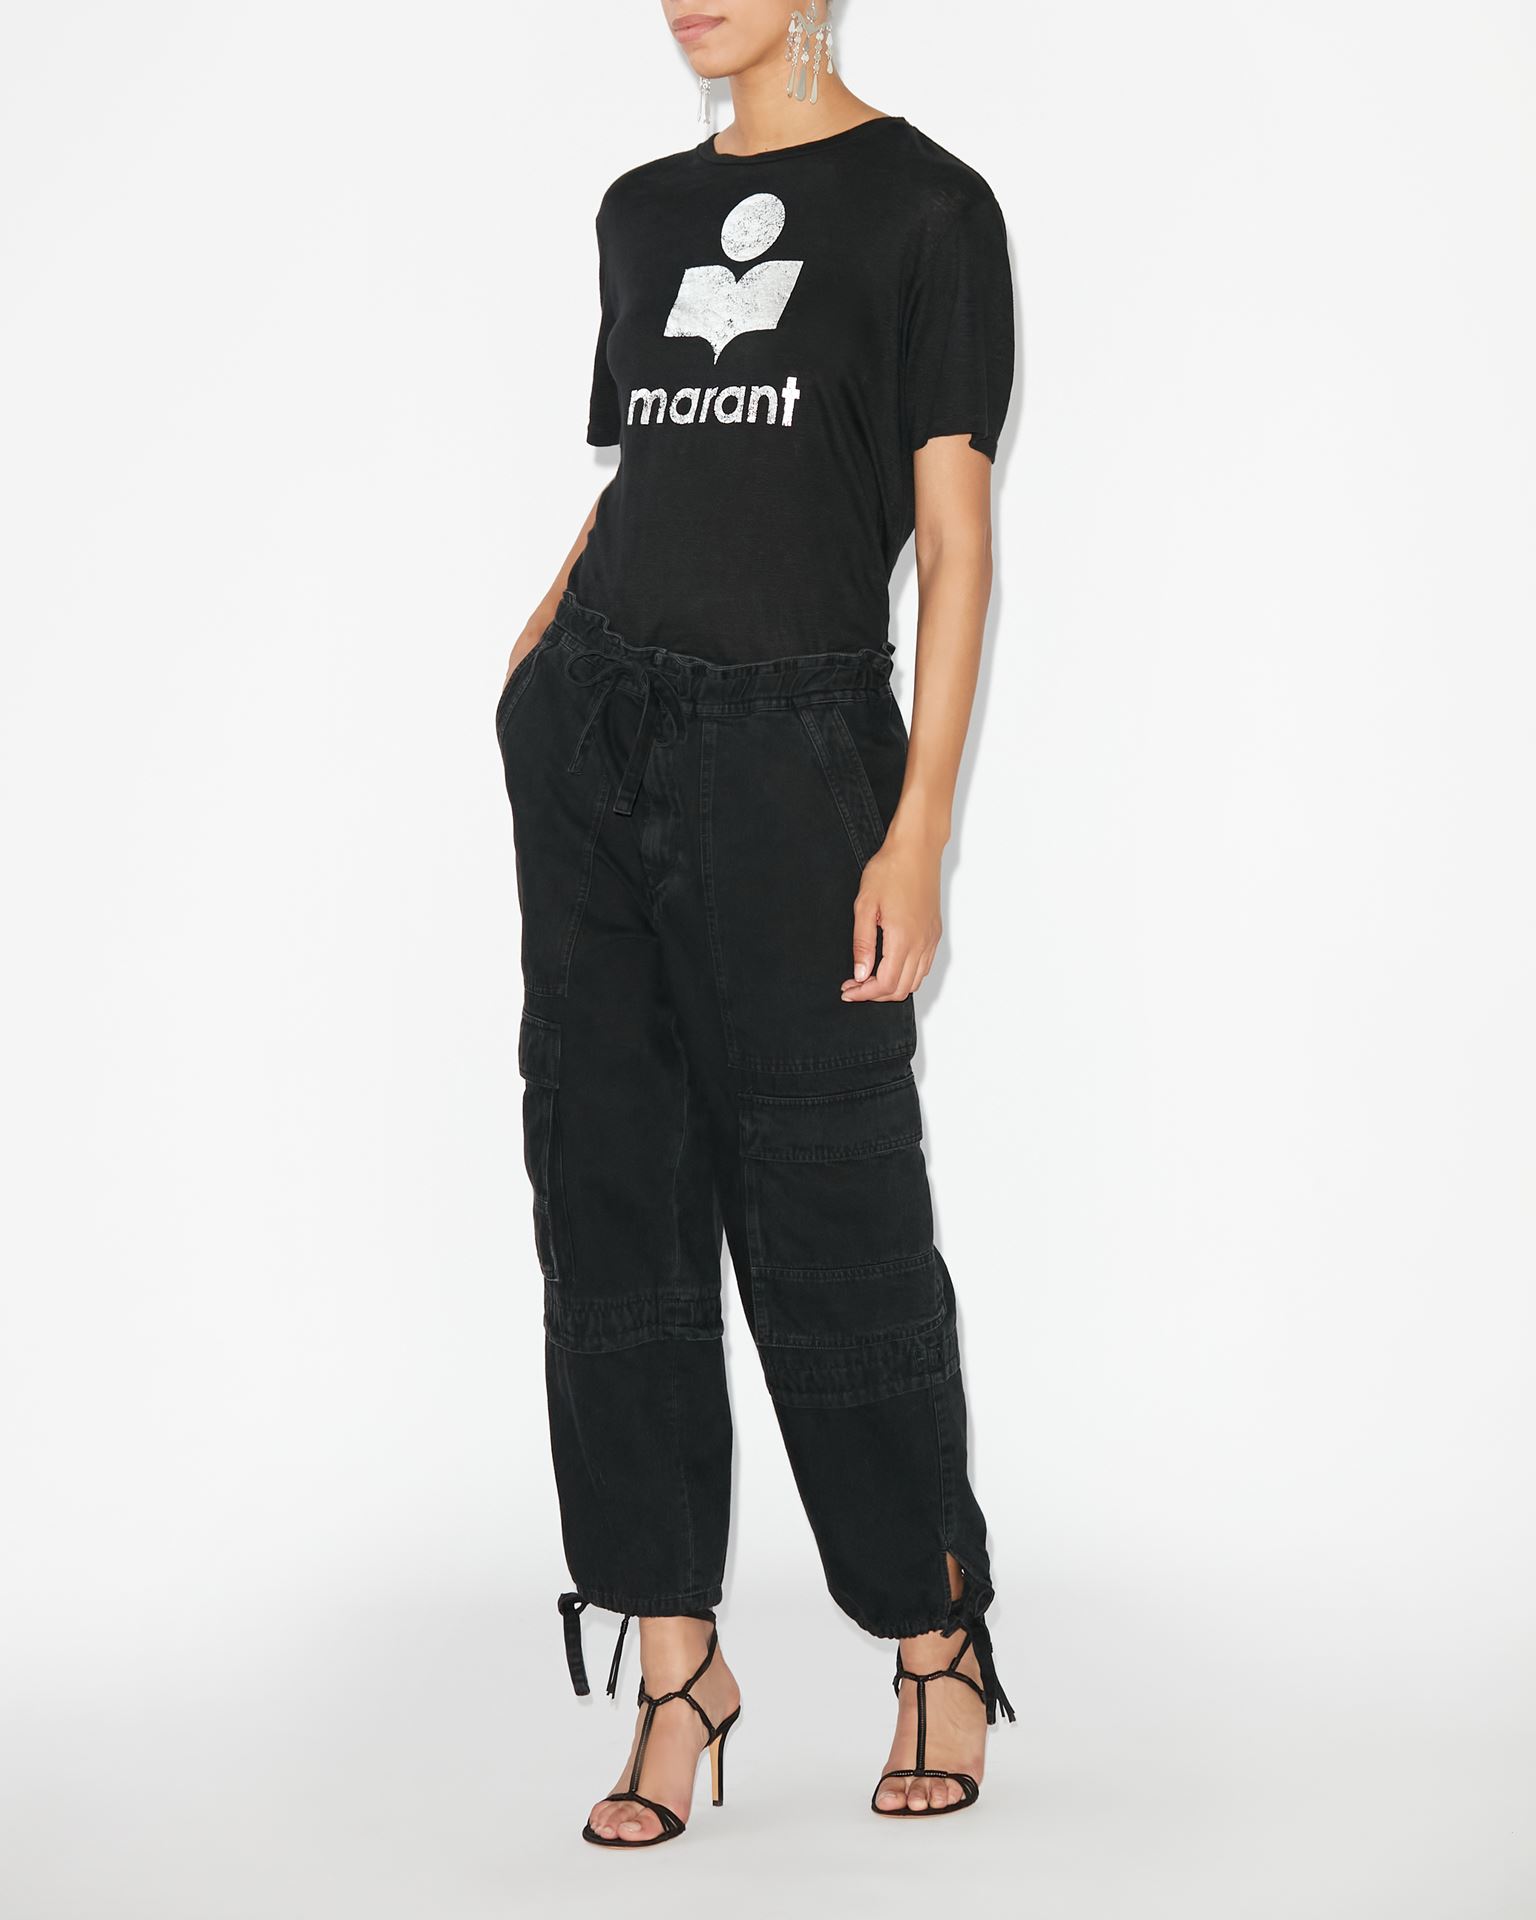 Isabel Marant Marant Étoile, Tee-shirt A Logo Zewel - Femme - Noir